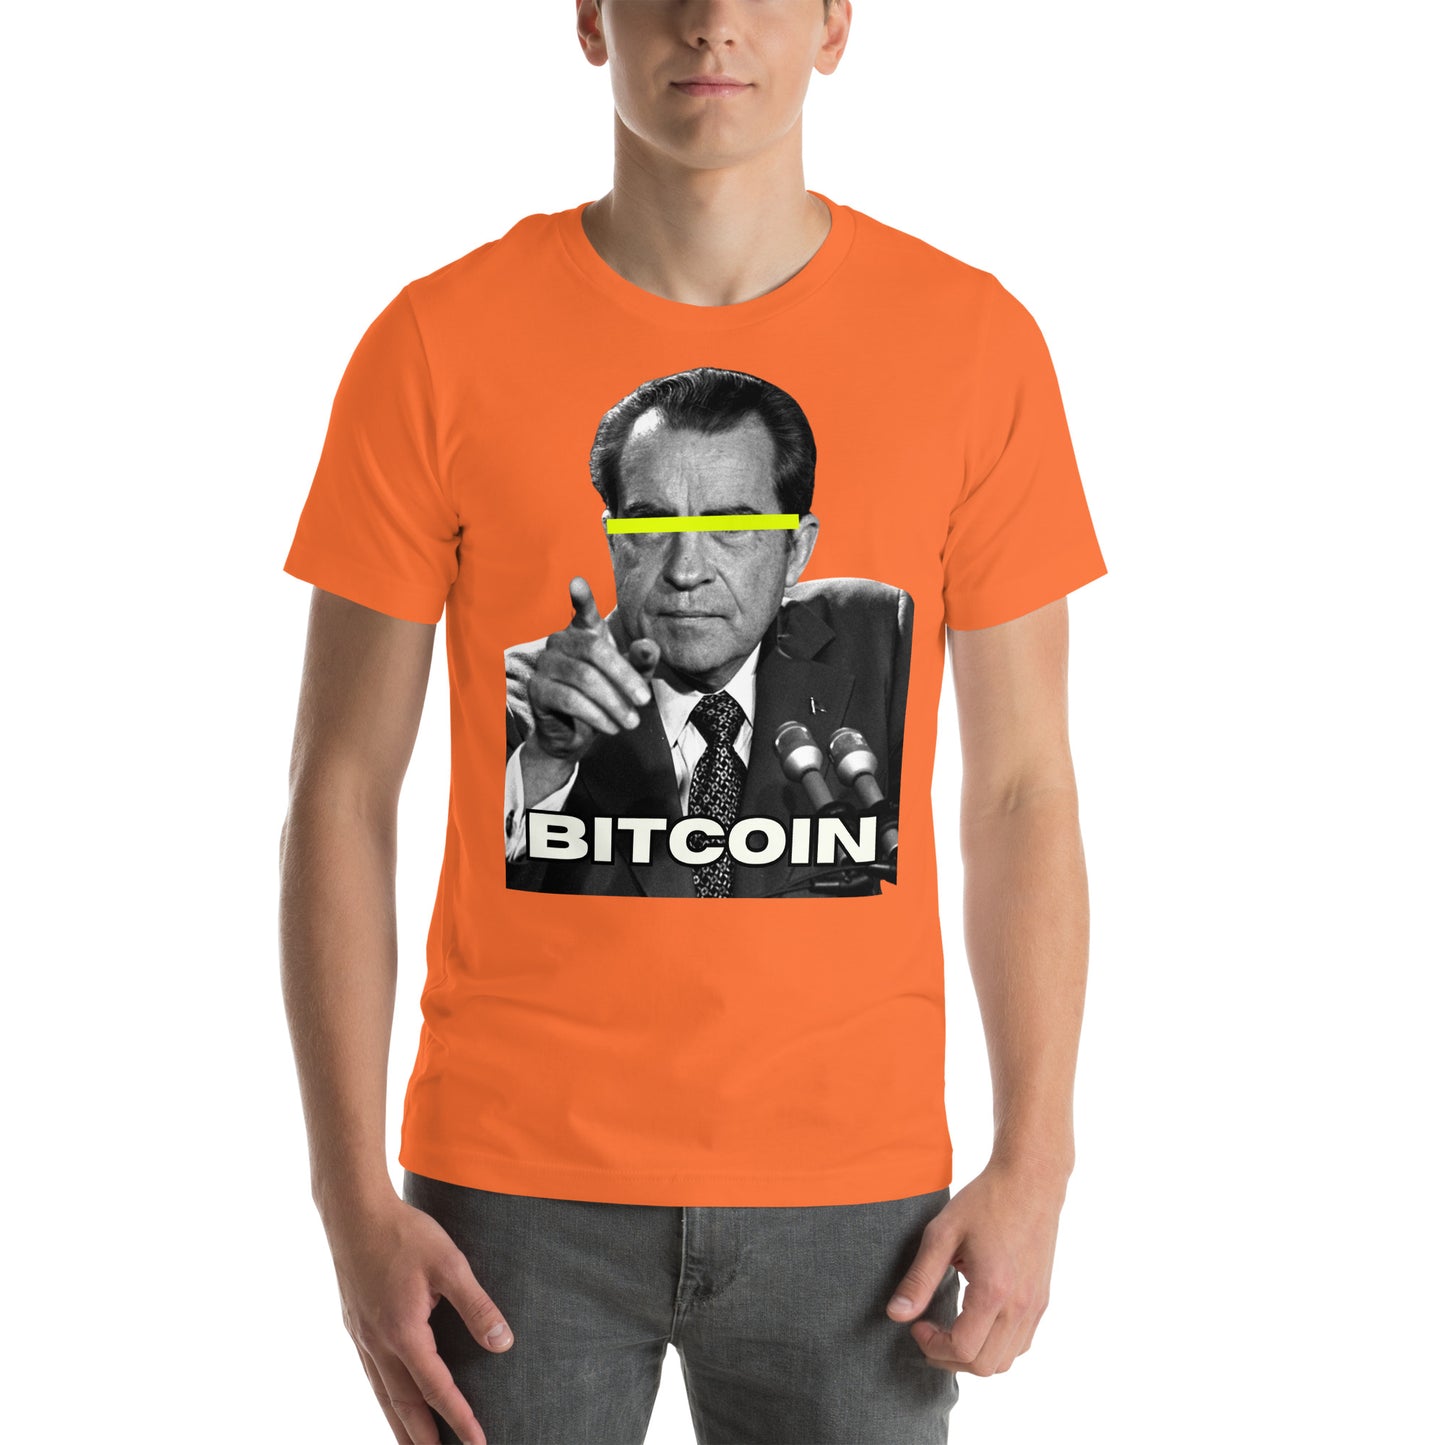 Bitcoin Bretton Woods T-Shirt